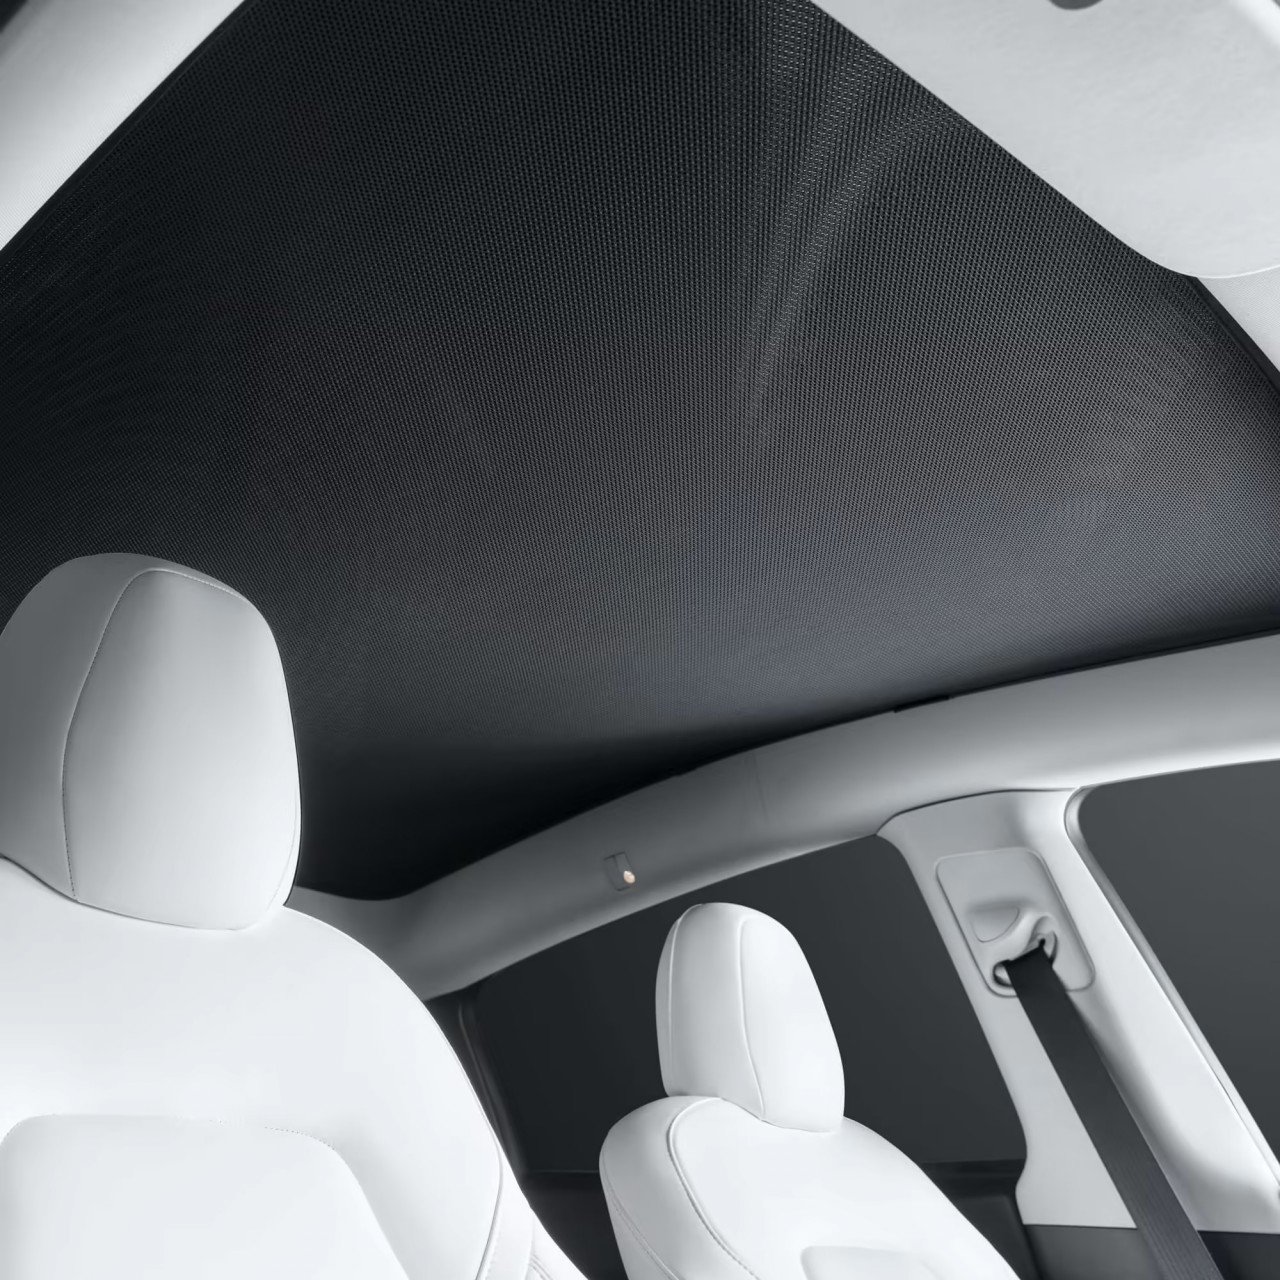 Tirai pelindung cahaya matahari bumbung memandangkan kenderaan EV ini memiliki ruang bumbung kaca